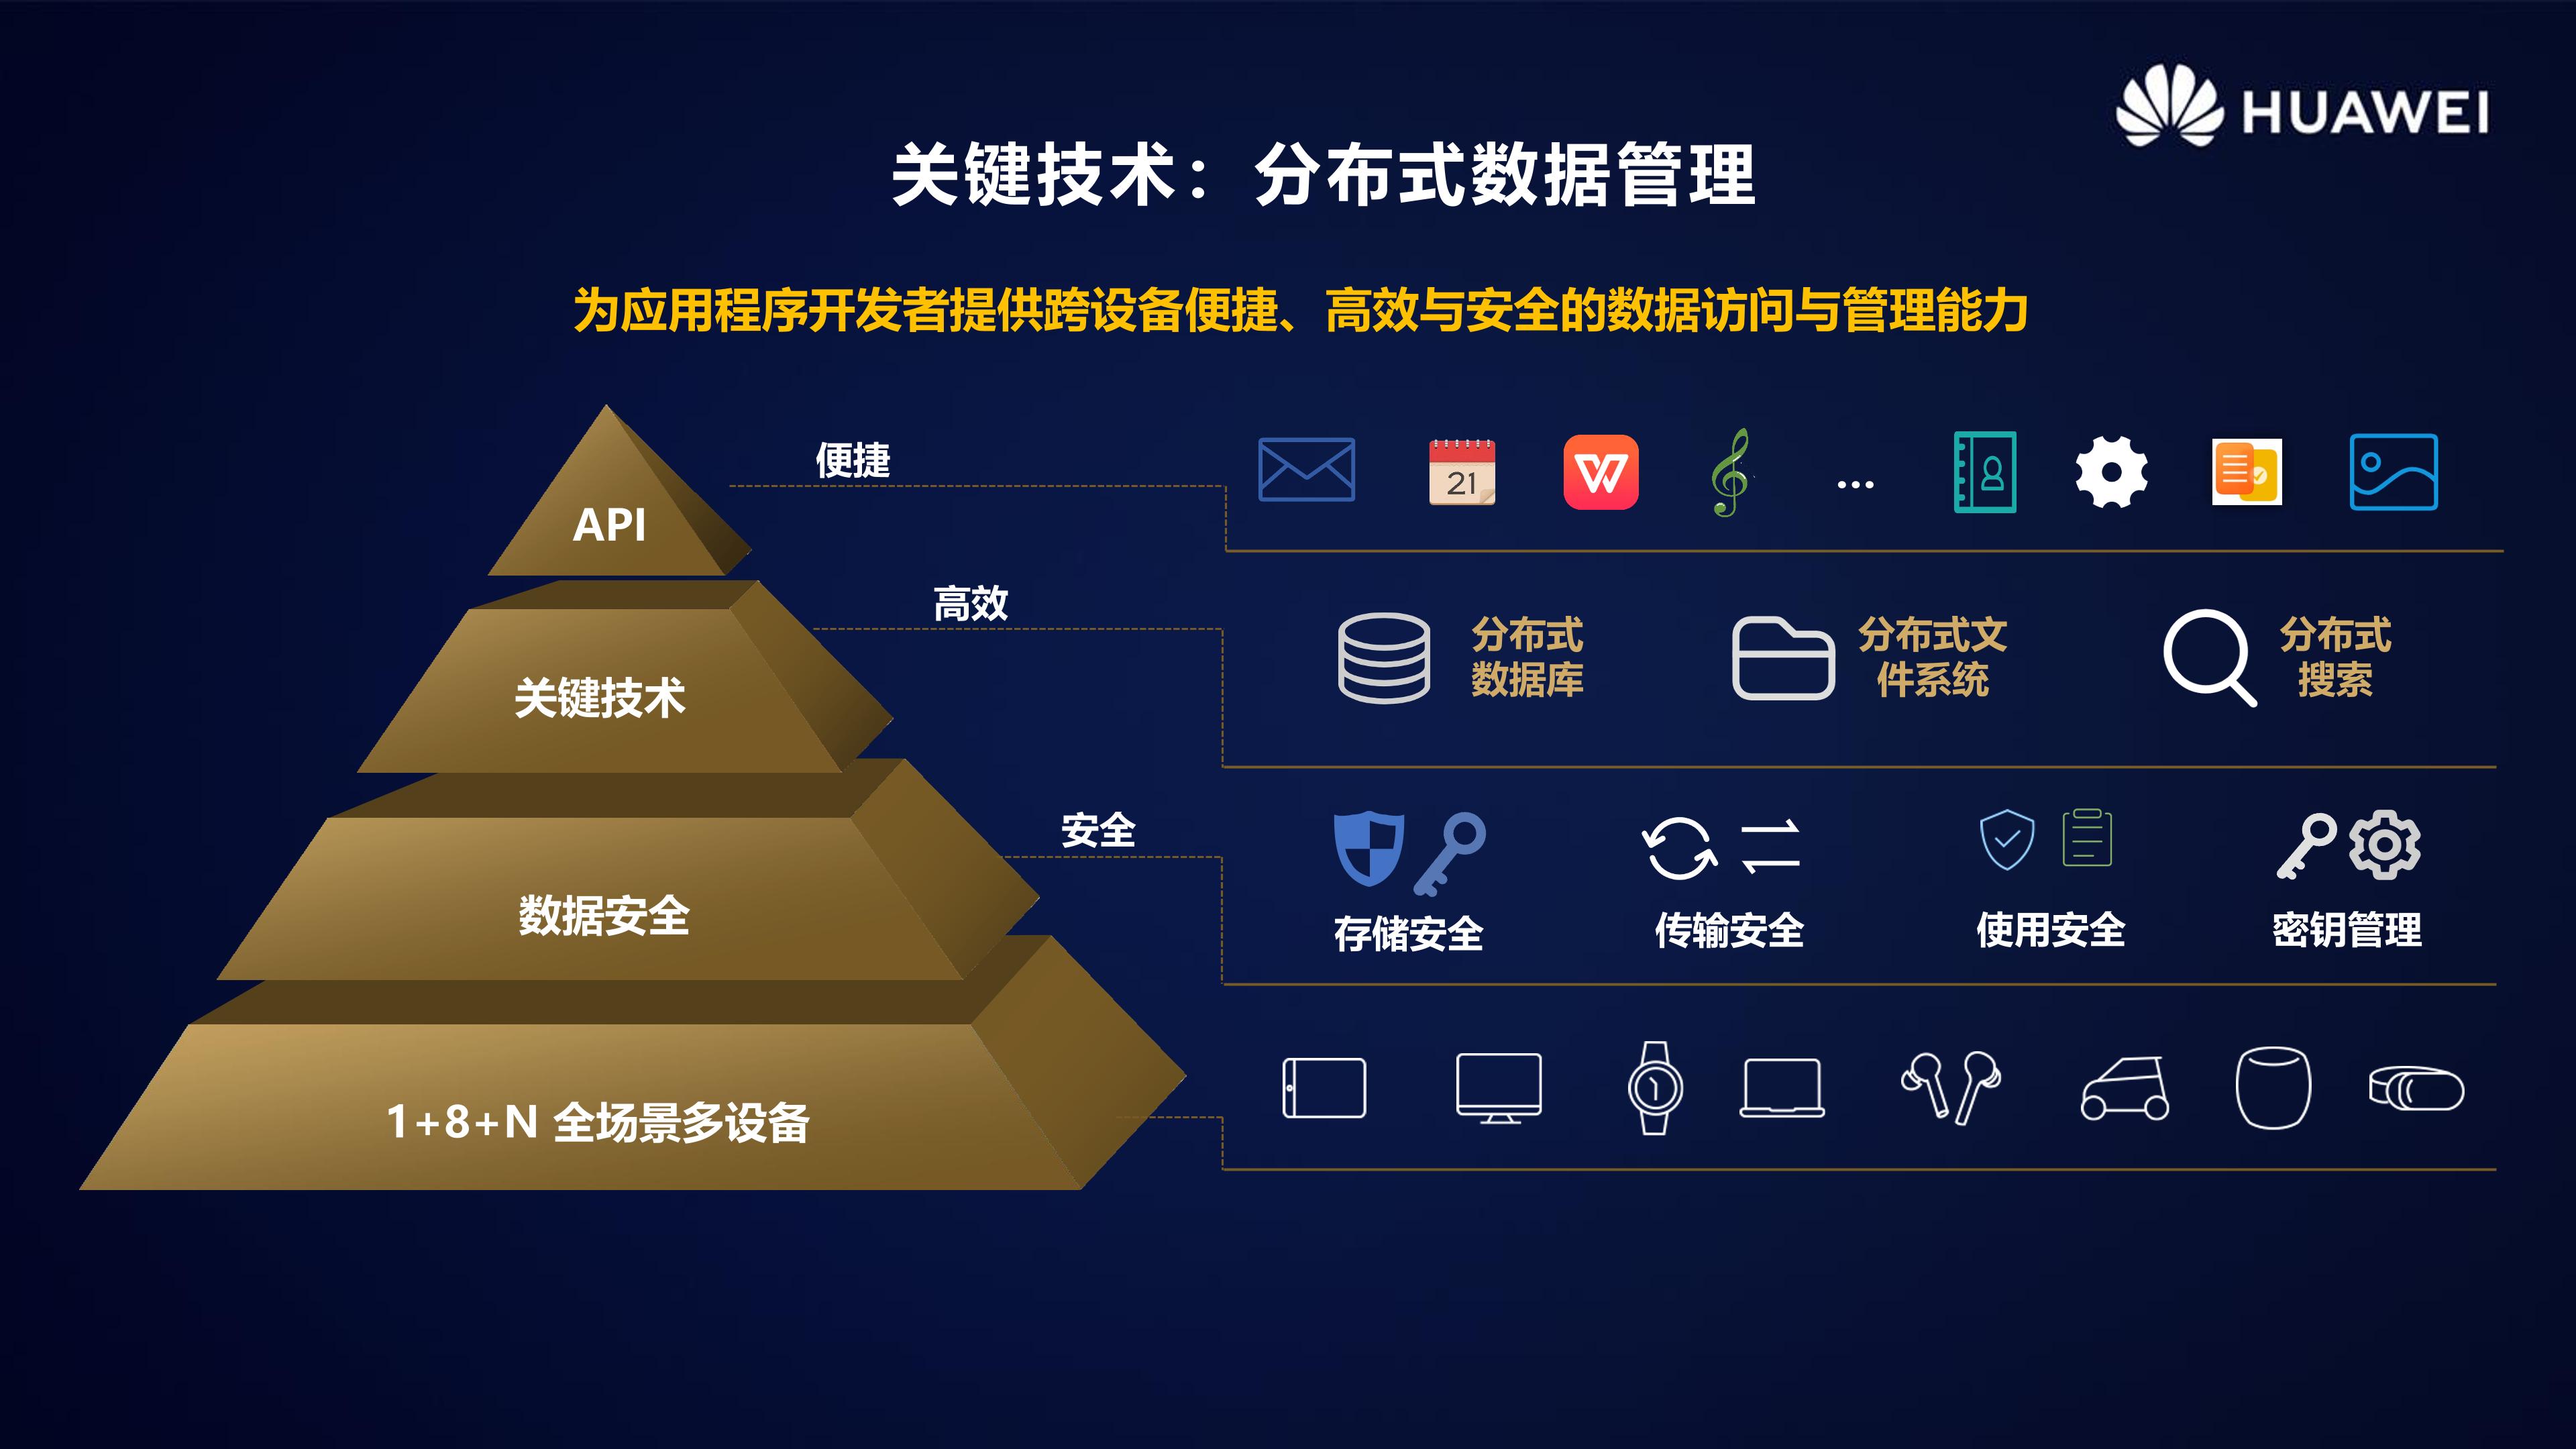 HarmonyOS 2.0手机开发者Beta活动广州站内部PPT公开-鸿蒙开发者社区